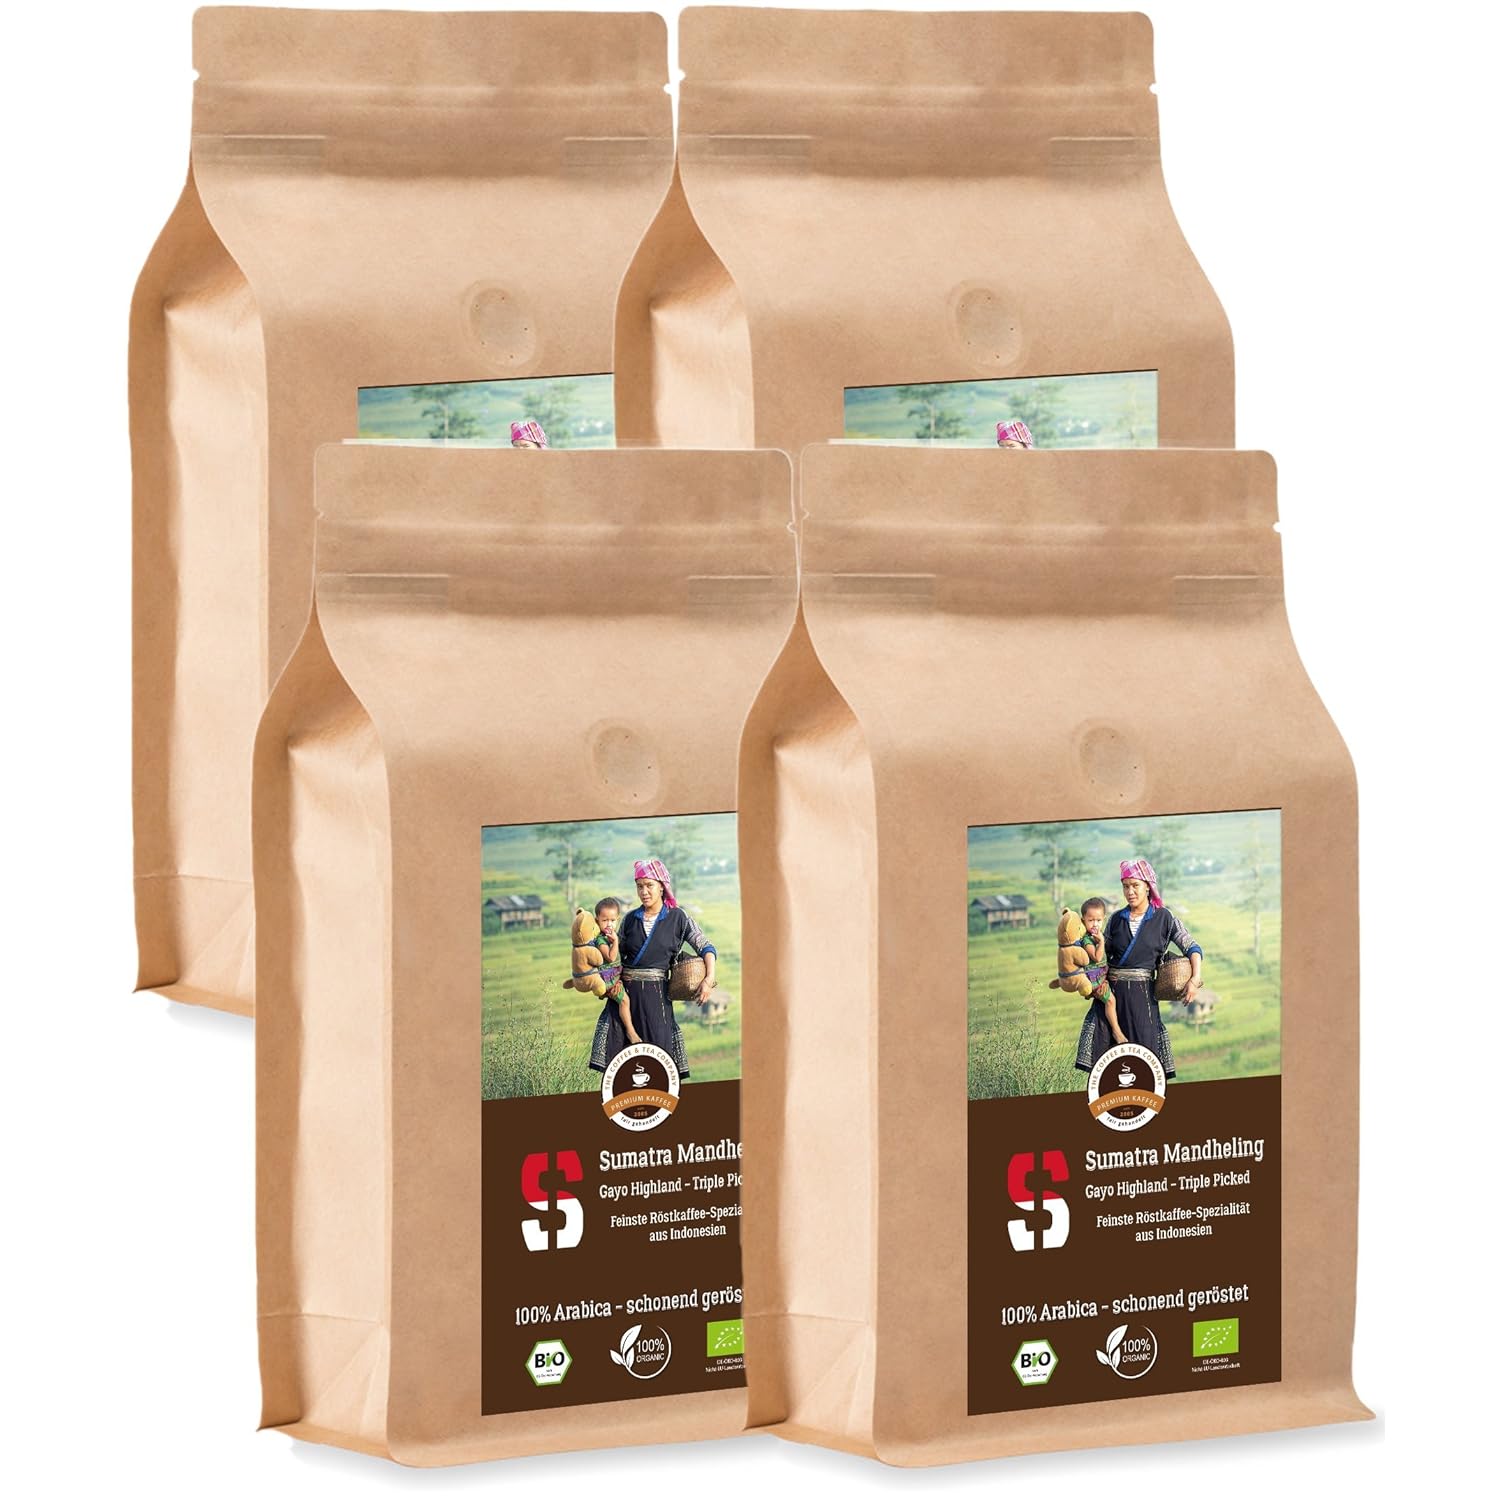 Coffee Globetrotter - Sumatra Mandheling Gayo Highland - Organic - 4 x 1000 g Fine Ground - for Fully Automatic Coffee Grinder - Roasted Coffee from Organic Cultivation | Gastropack Economy Pack